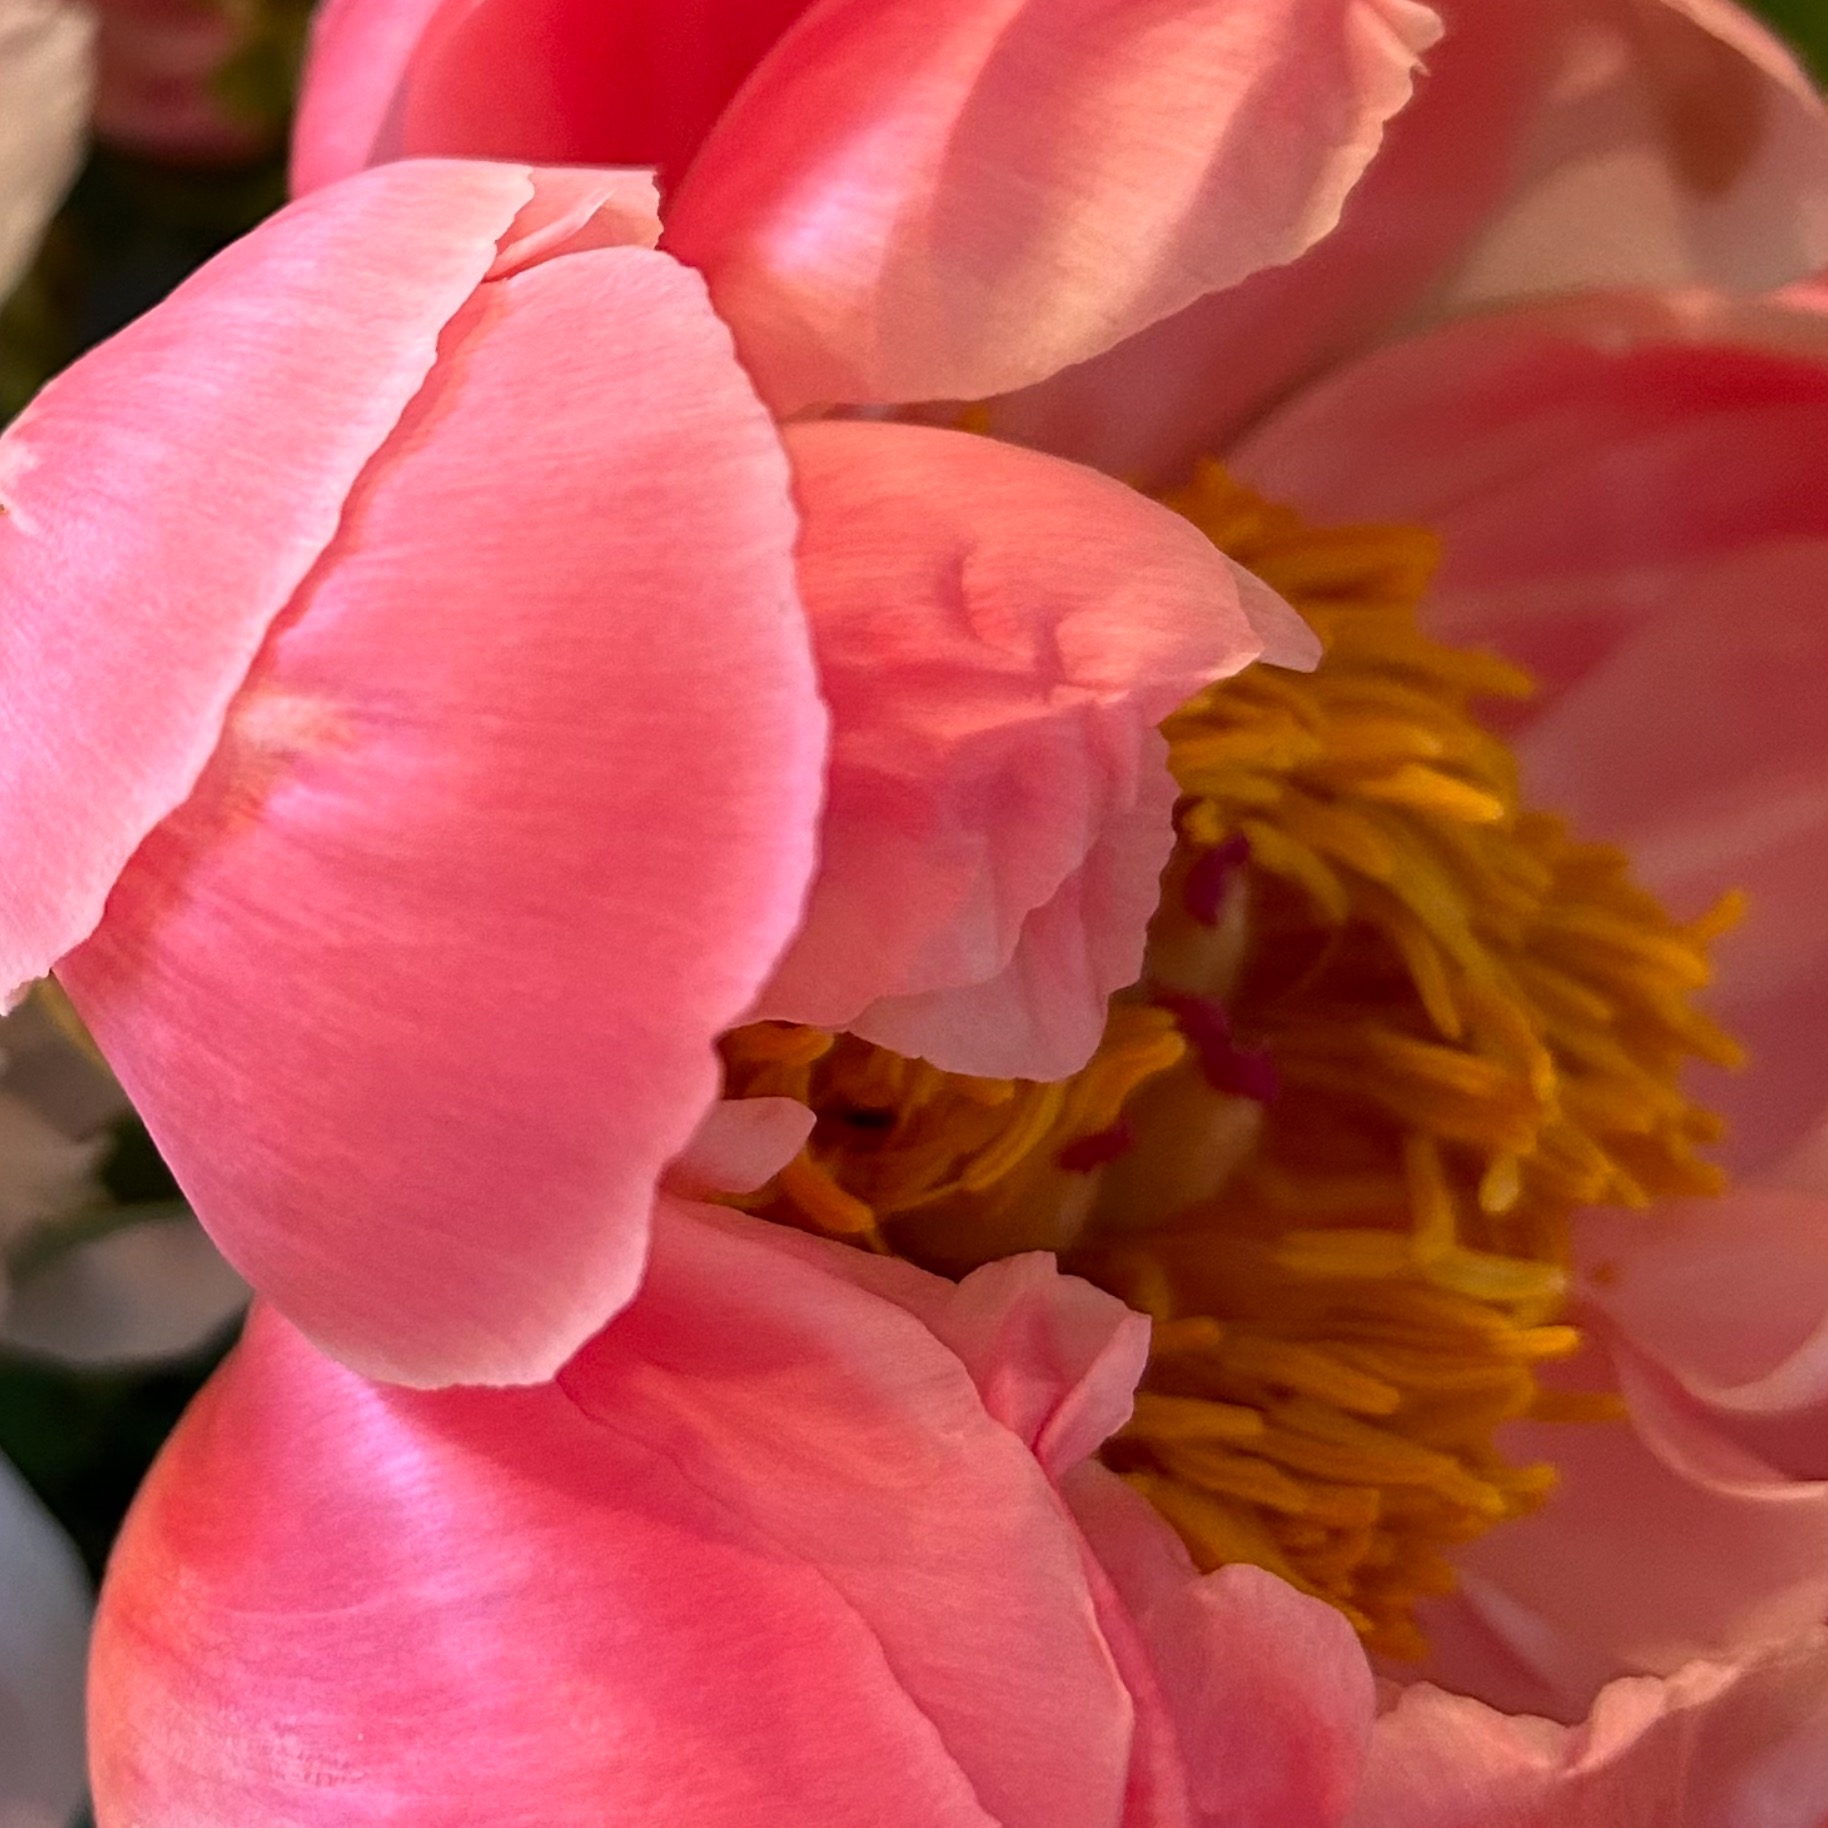 Close up of the pink petals of a peony